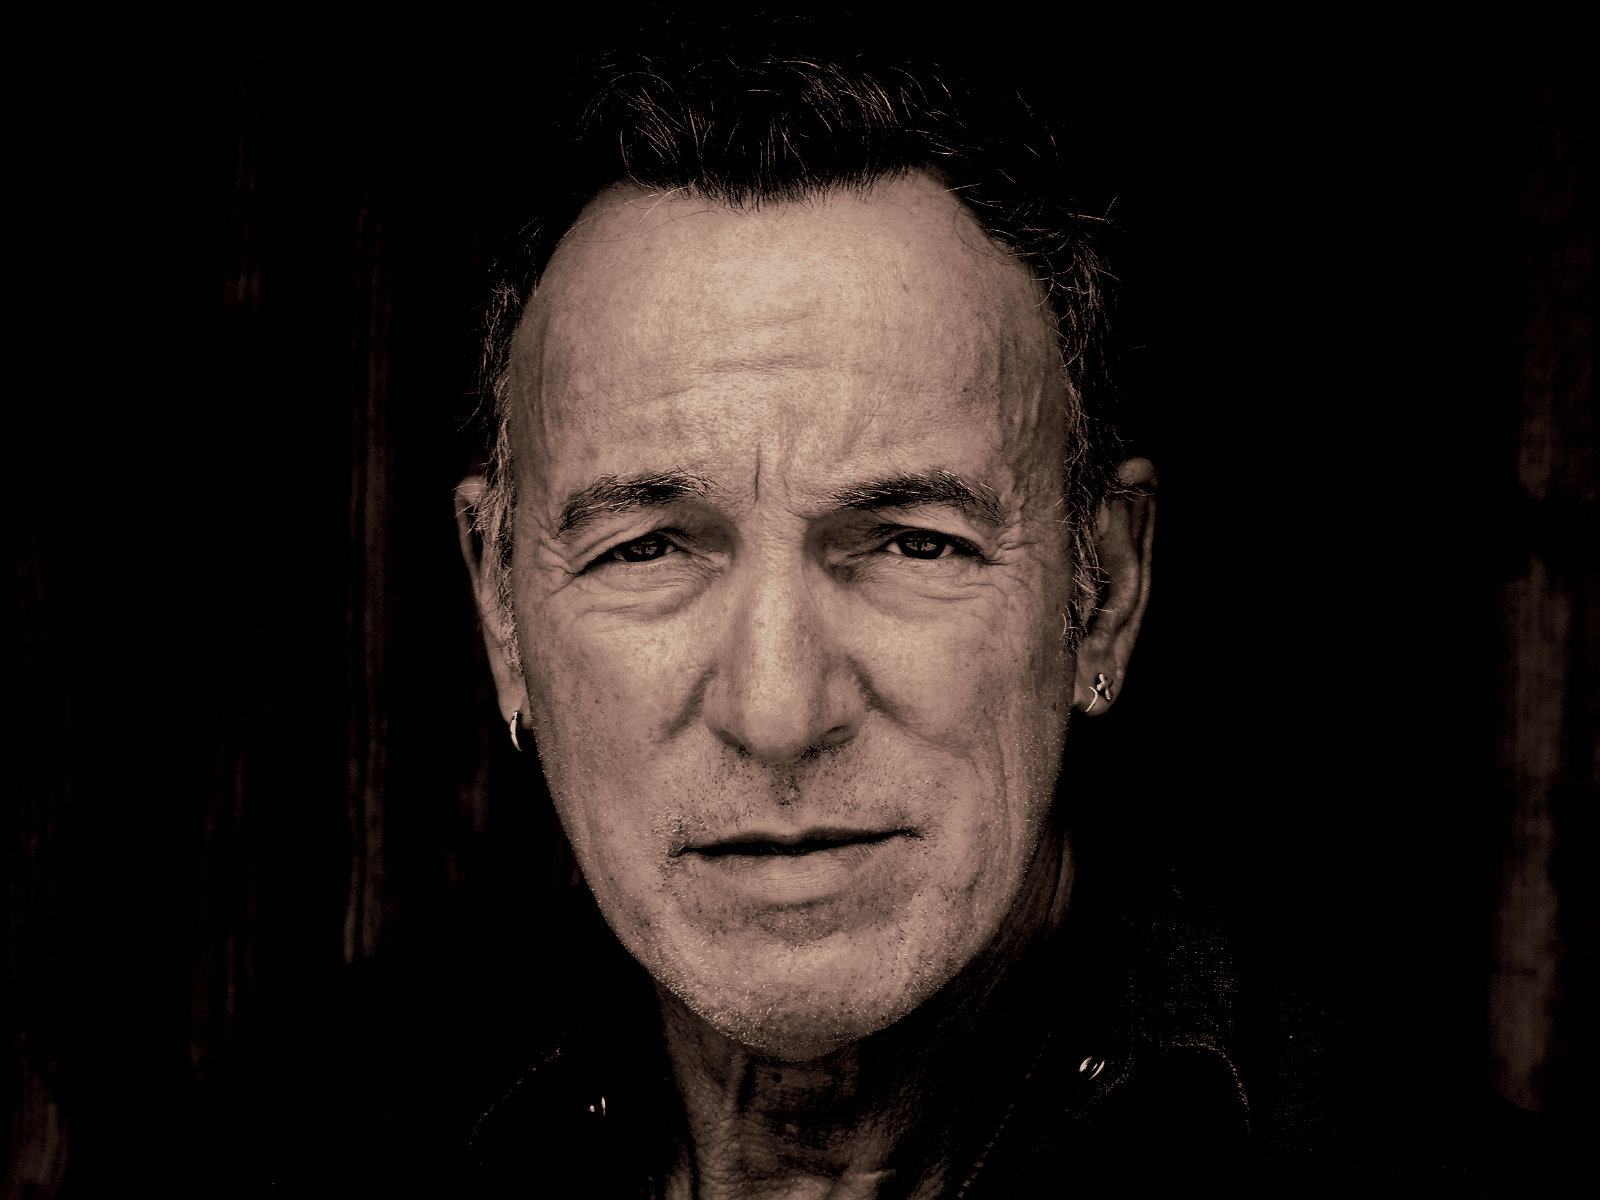 Πόσο ομορφάντρας ήσουνα στα νιάτα σου ρε Bruce Springsteen;